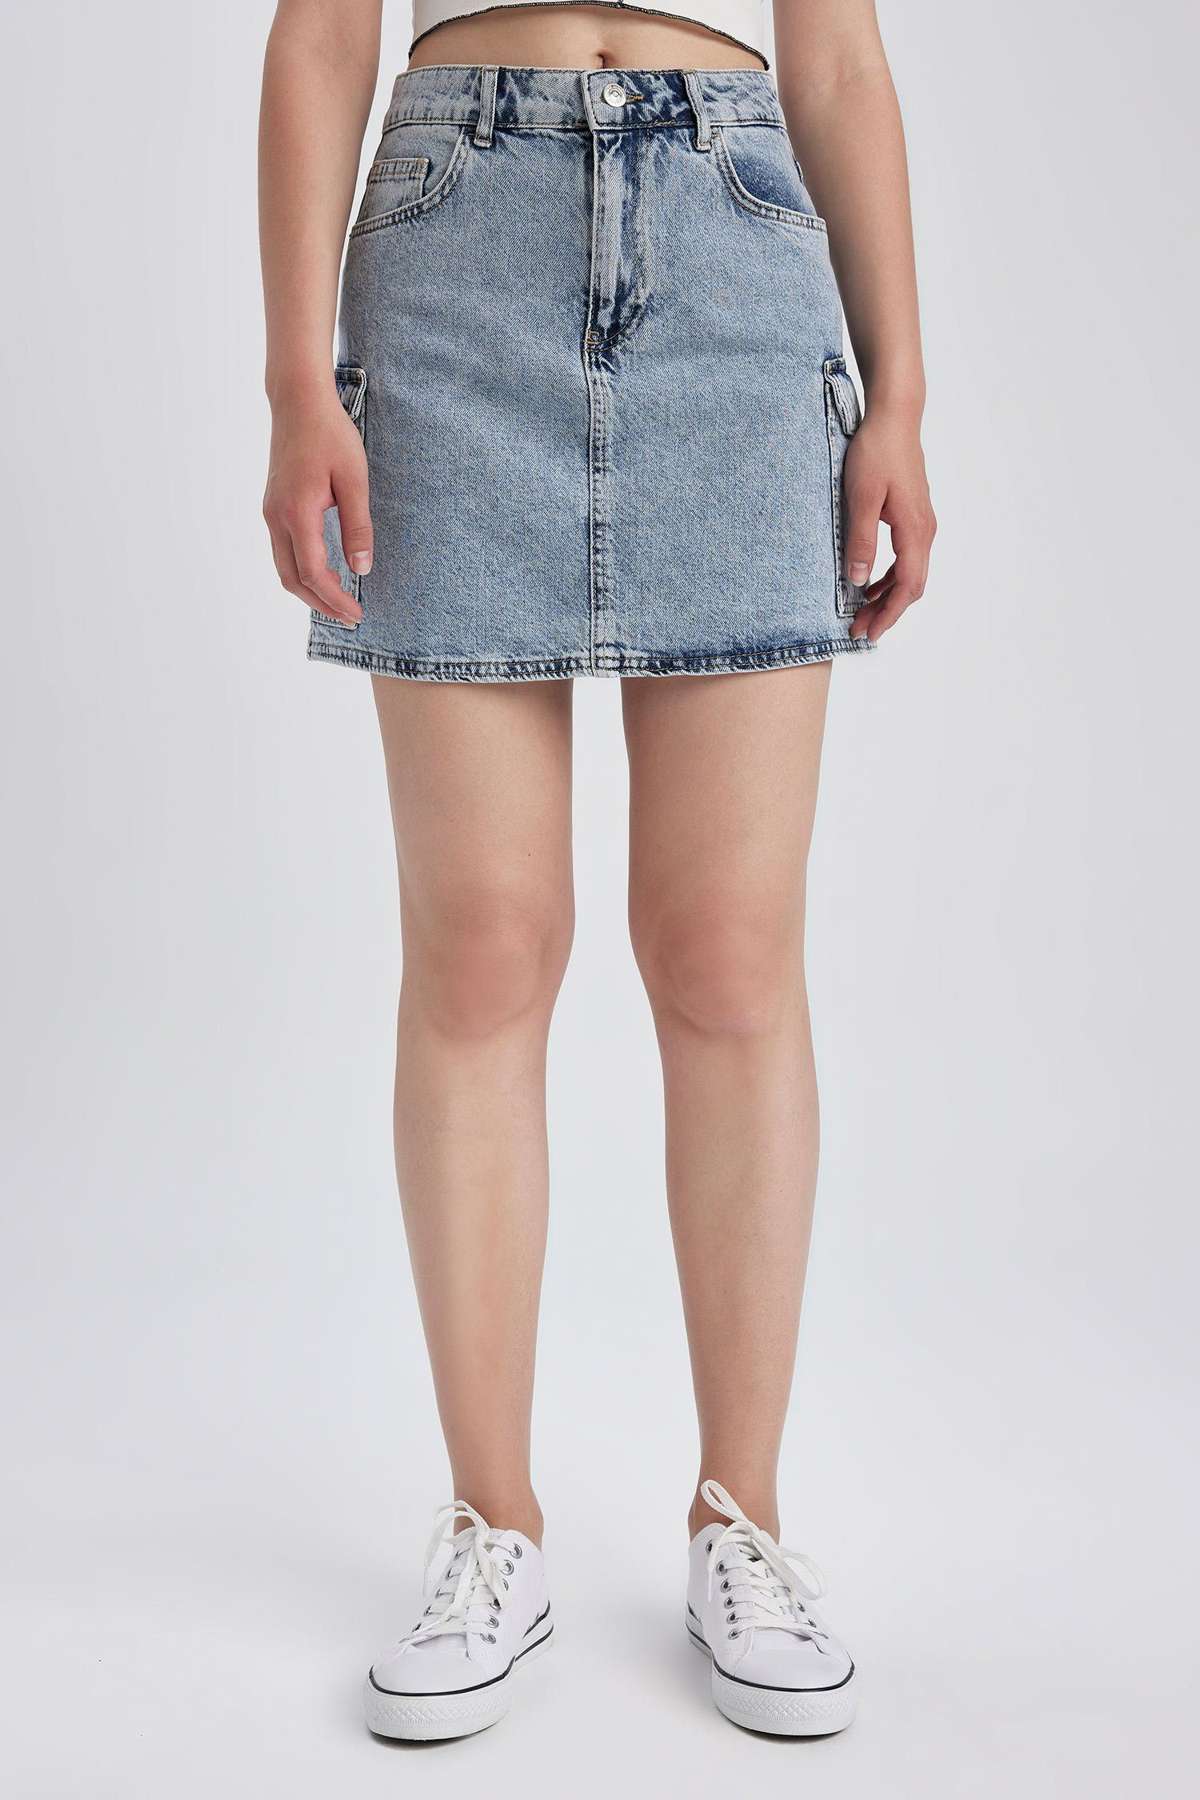 Джинсовая юбка женская джинсовая юбка CARGO FIT